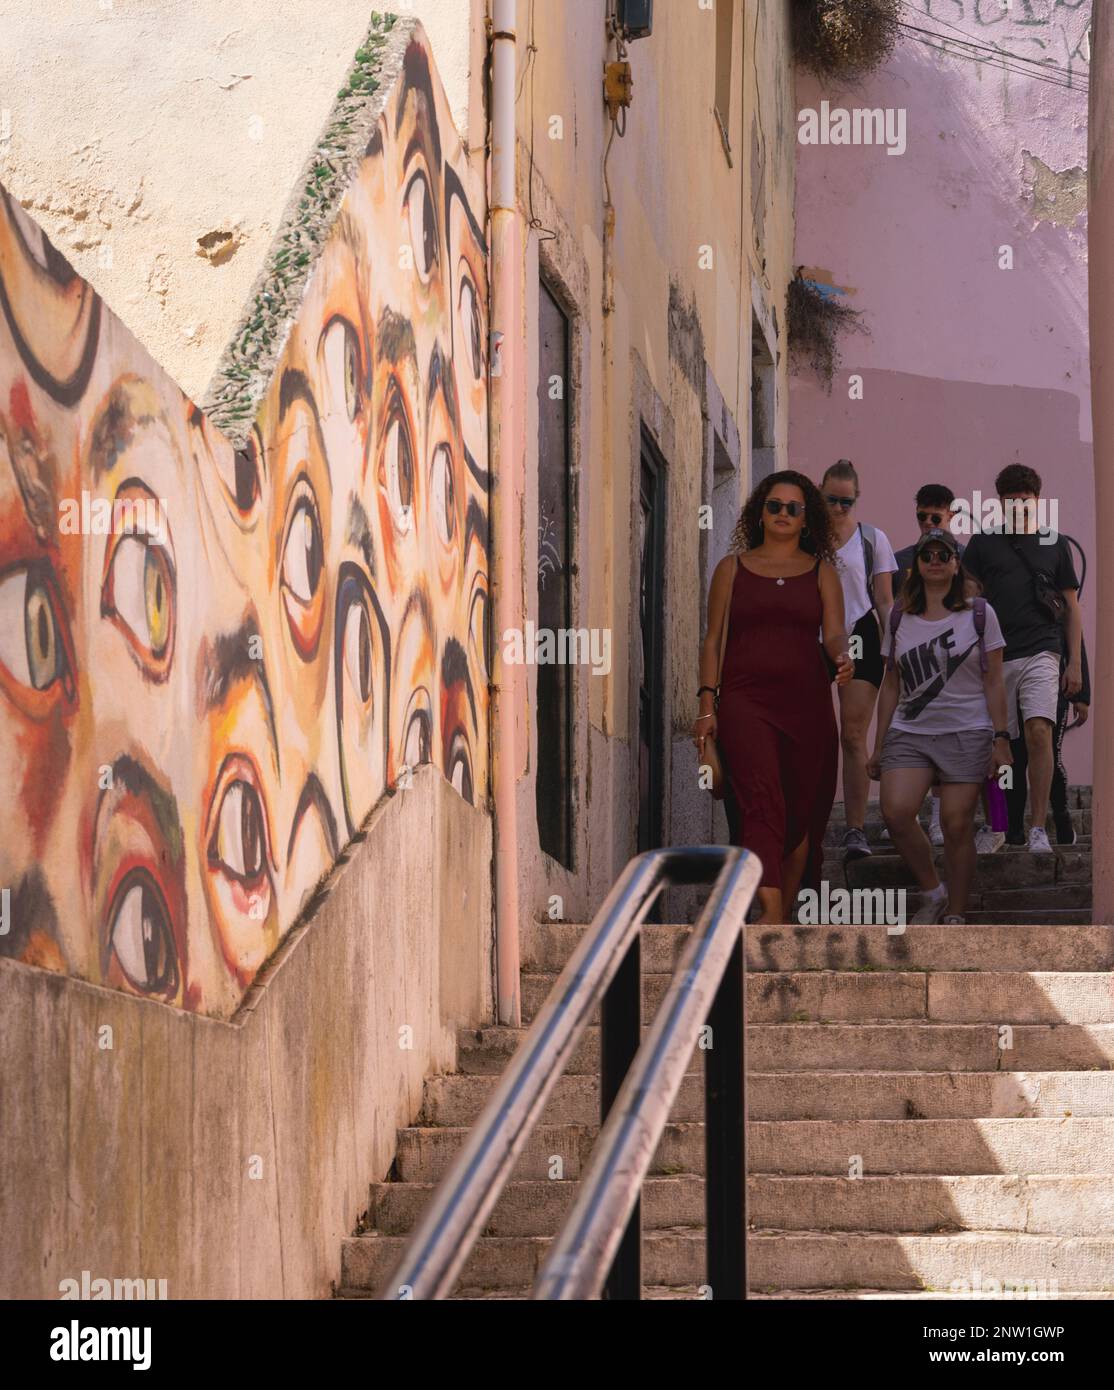 Lissabon, Portugal. Leute steigen Treppen in einer engen Gasse hinab. Die Wand ist mit Graffiti von beobachtenden Augen bemalt. Stockfoto